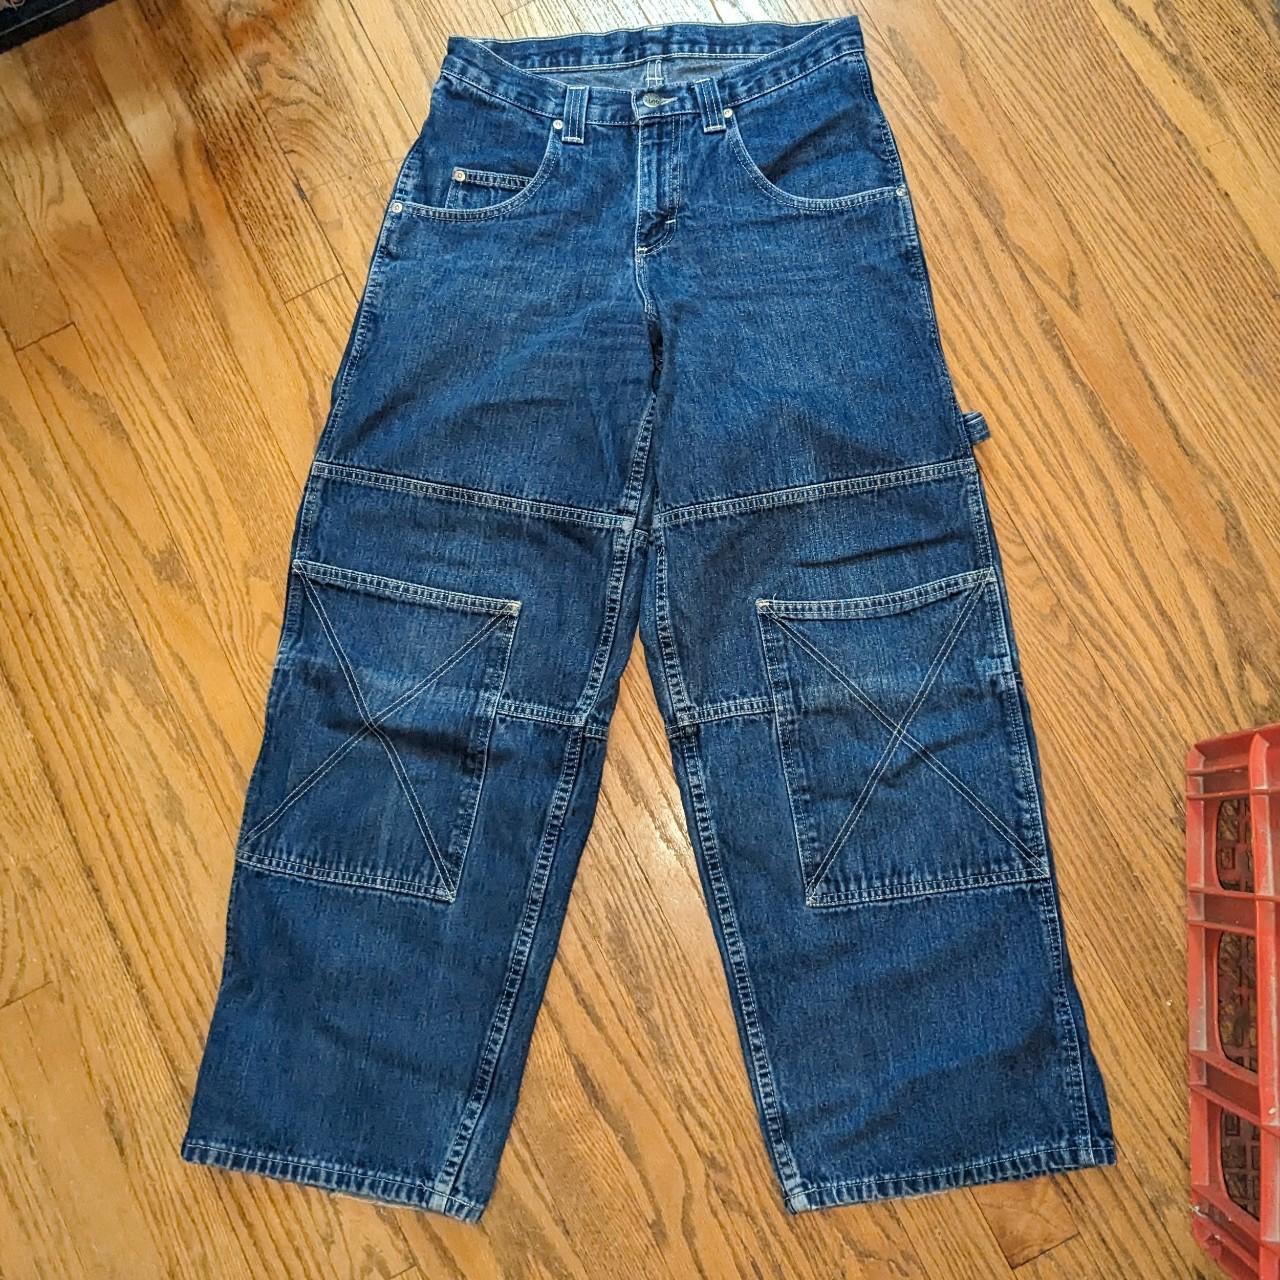 Vintage cargo Lee Pipes jeans Very Lees does Jnco... - Depop